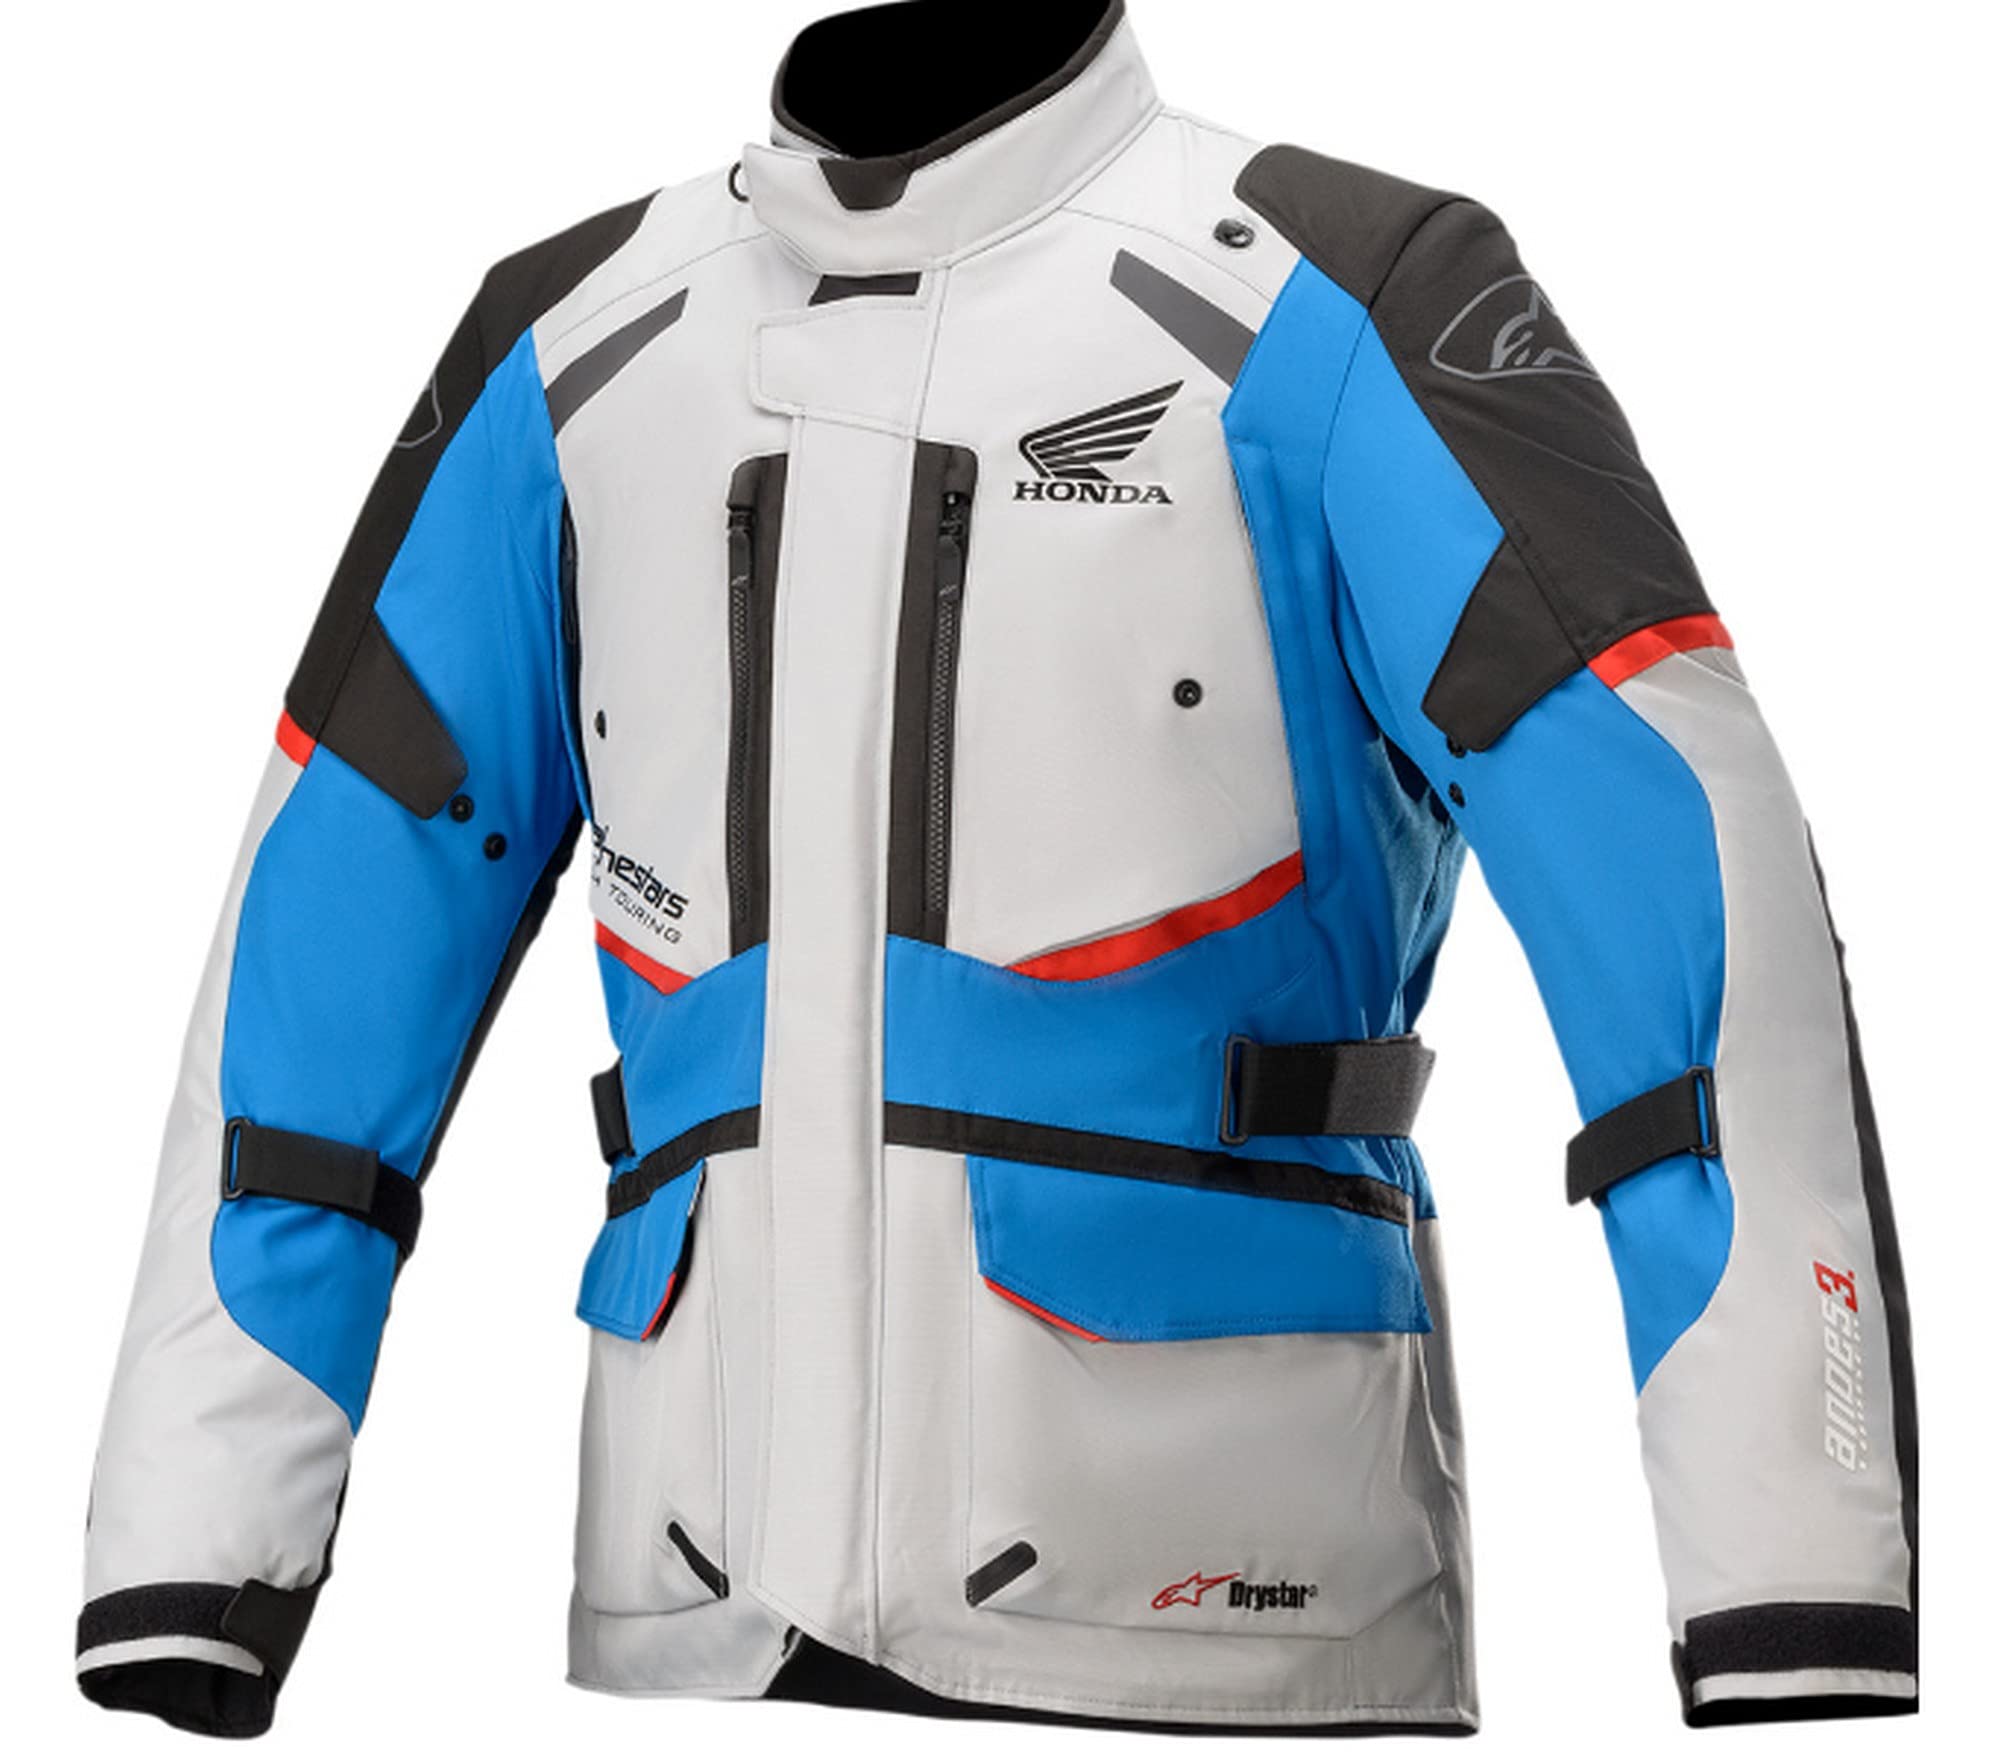 Alpinestars Honda Andes V3 Drystar Men's Street Motorcycle Jackets - Ice Gray/Blue/Bright